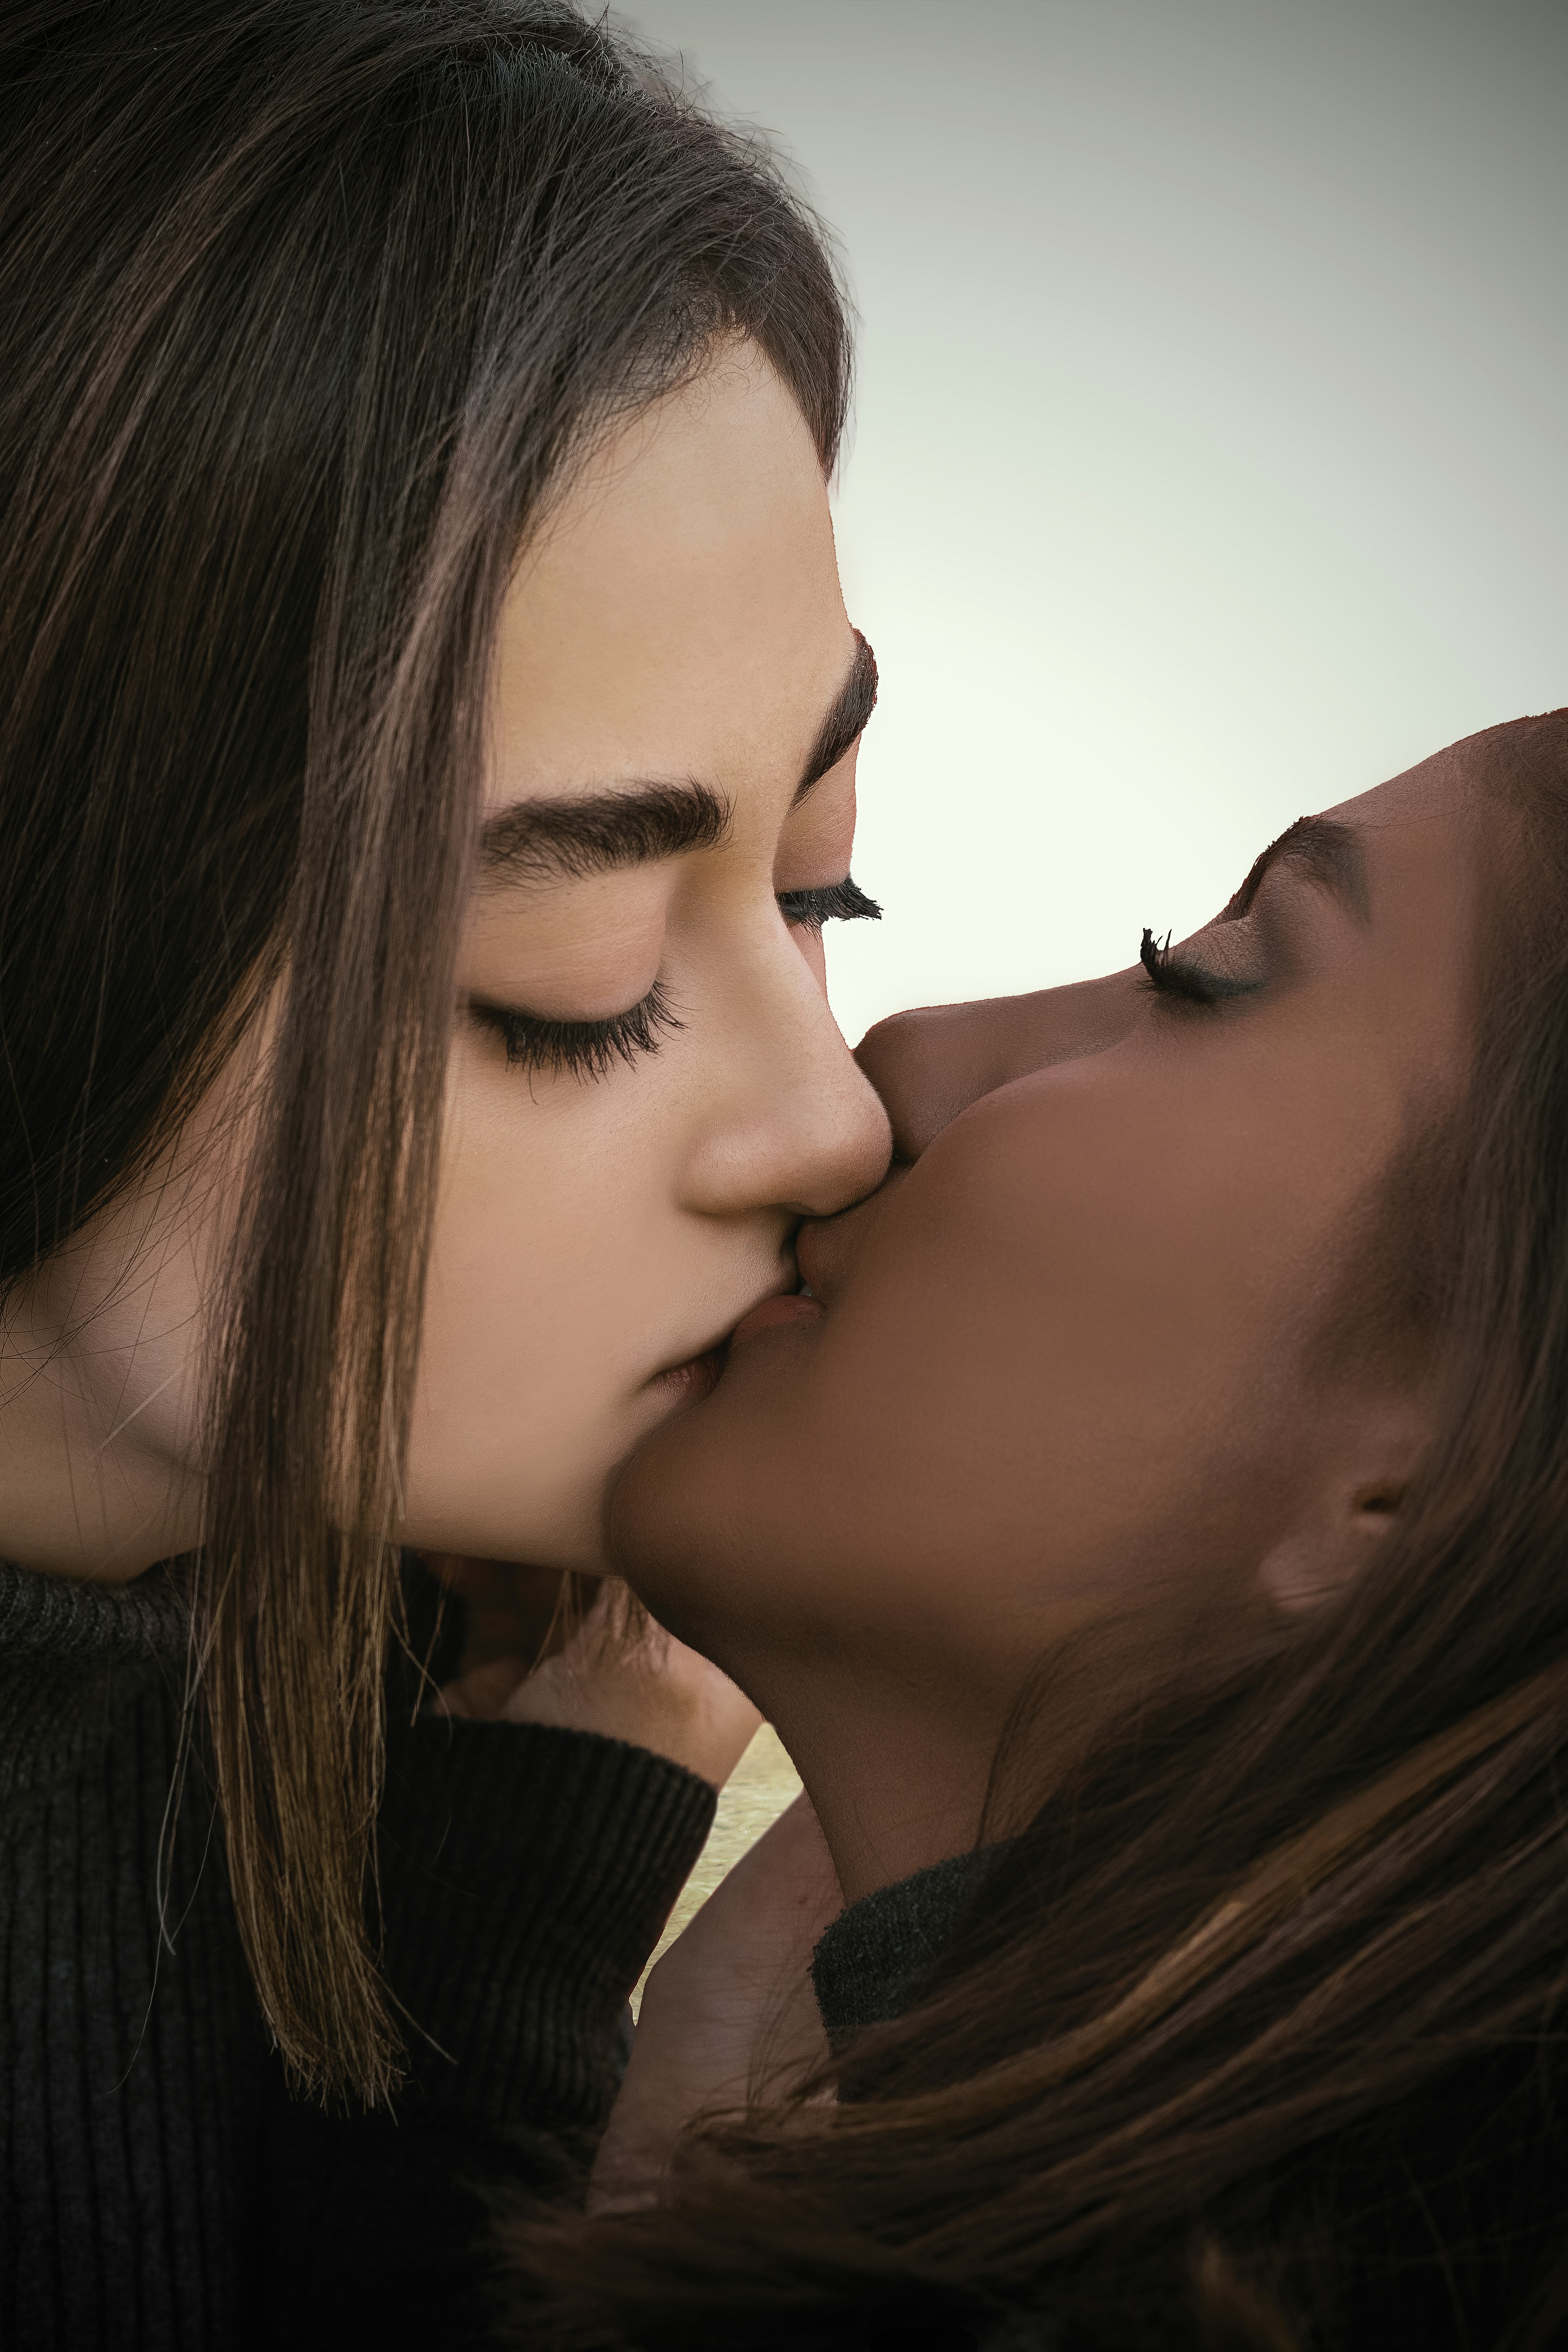 cansu ucar recommends Women Kissing Pics